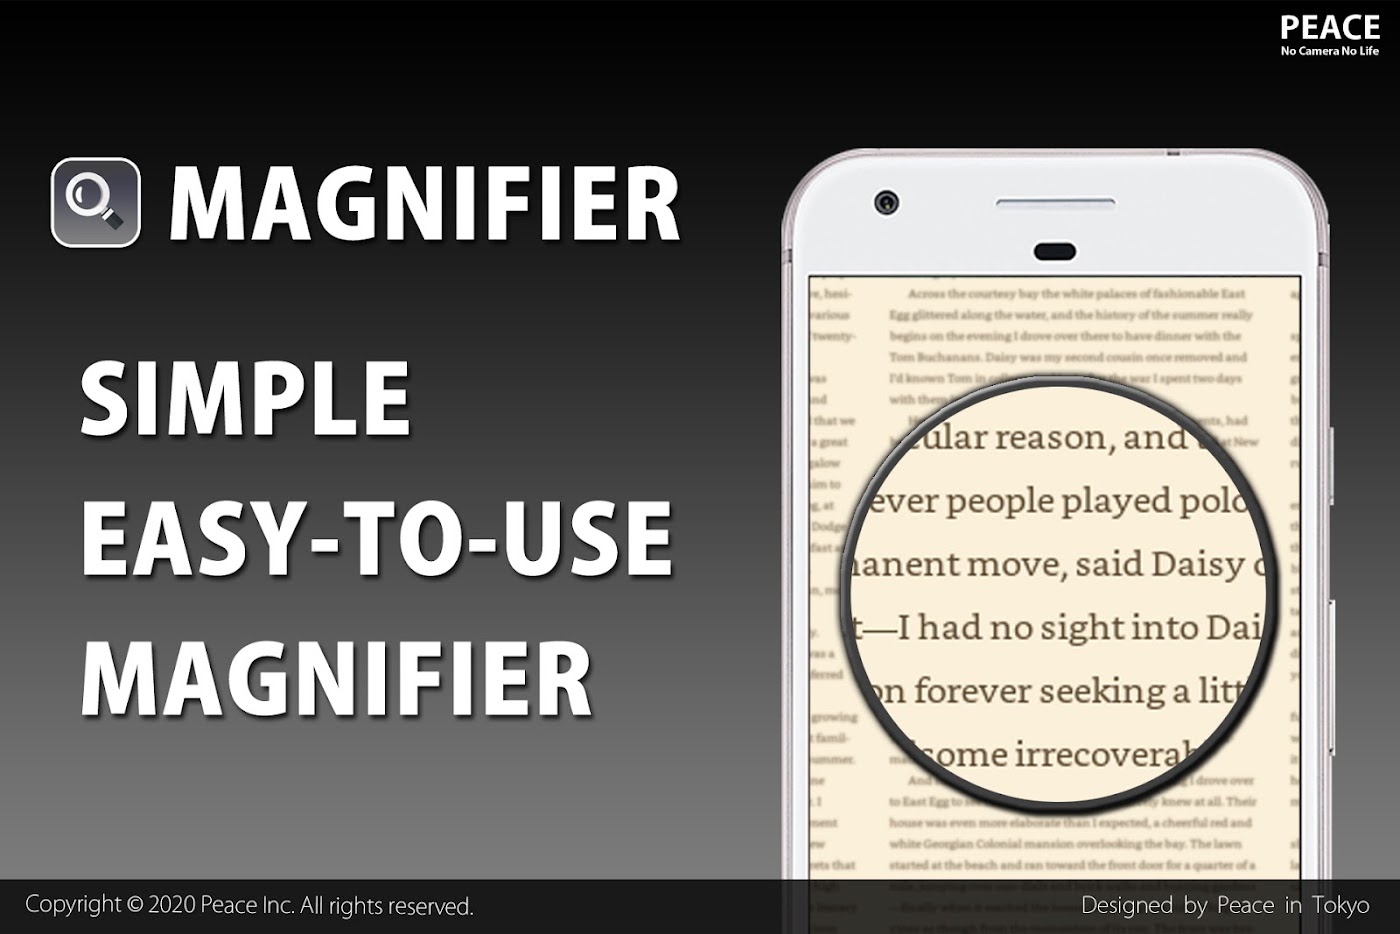 Magnifier 